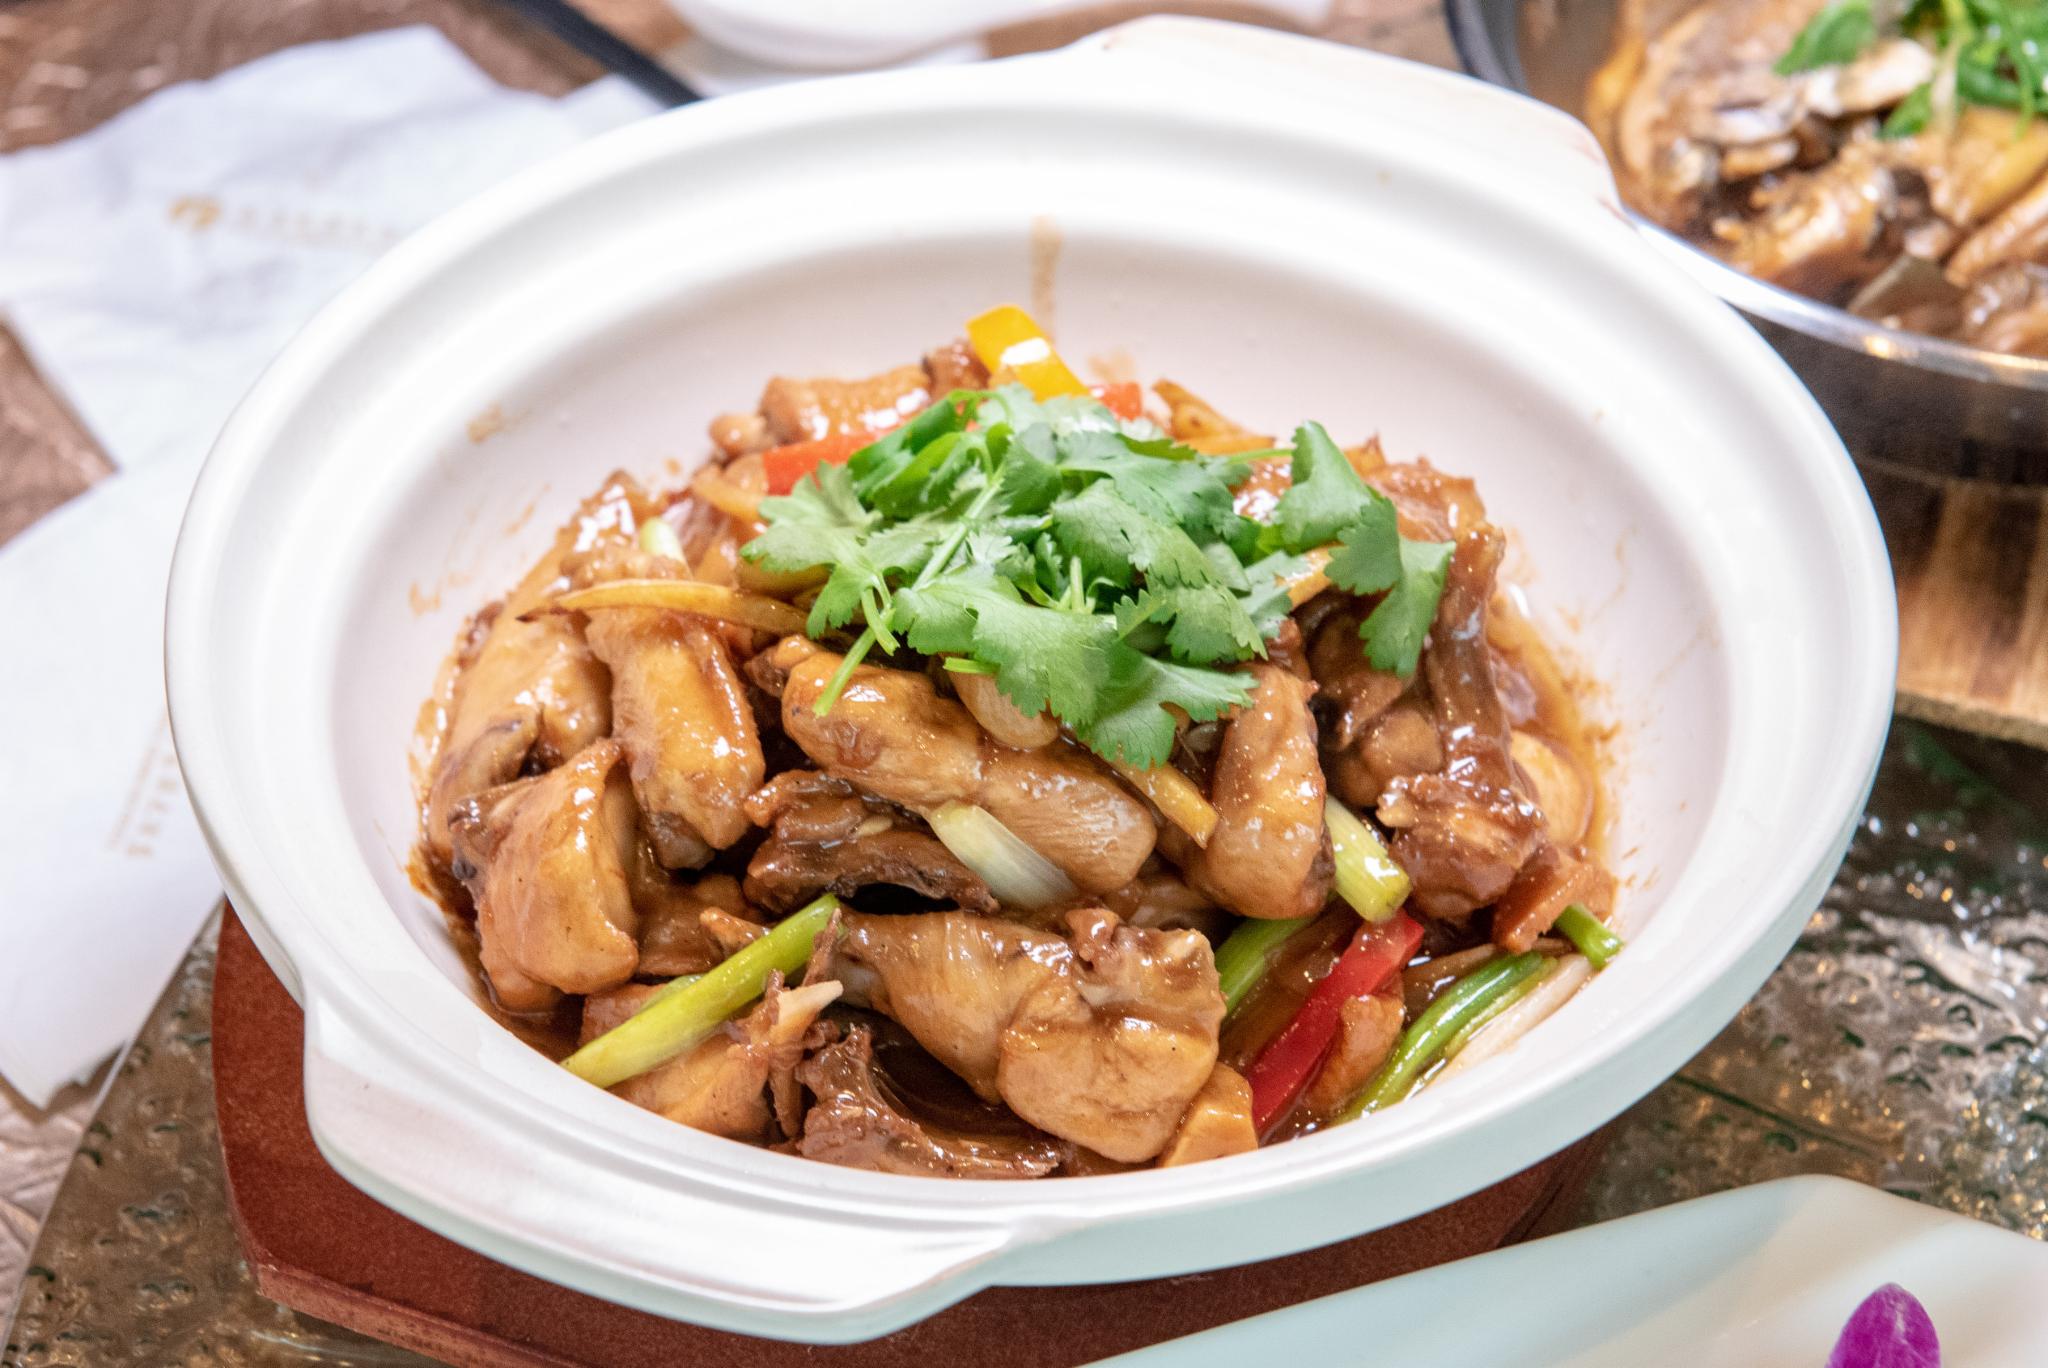 广东砂锅鸡煲,也是很经典的粤菜,喜欢吃鸡的朋友不可错过.